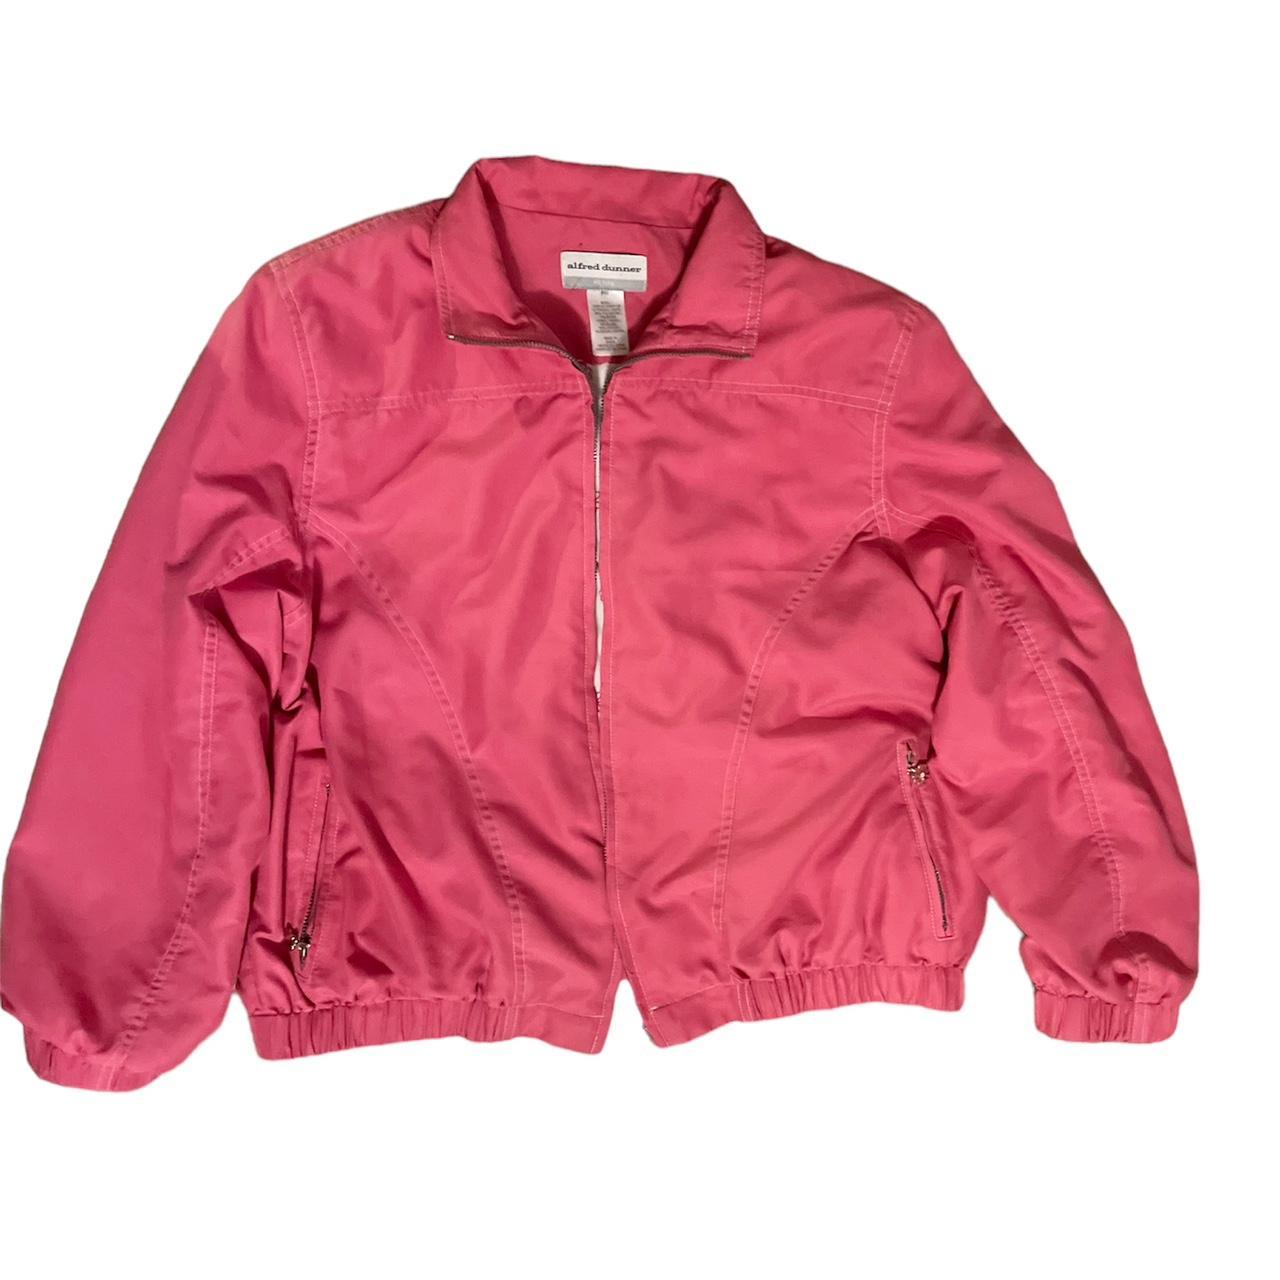 ALFRED DUNNER hot pink retro bomber jacket Super... - Depop